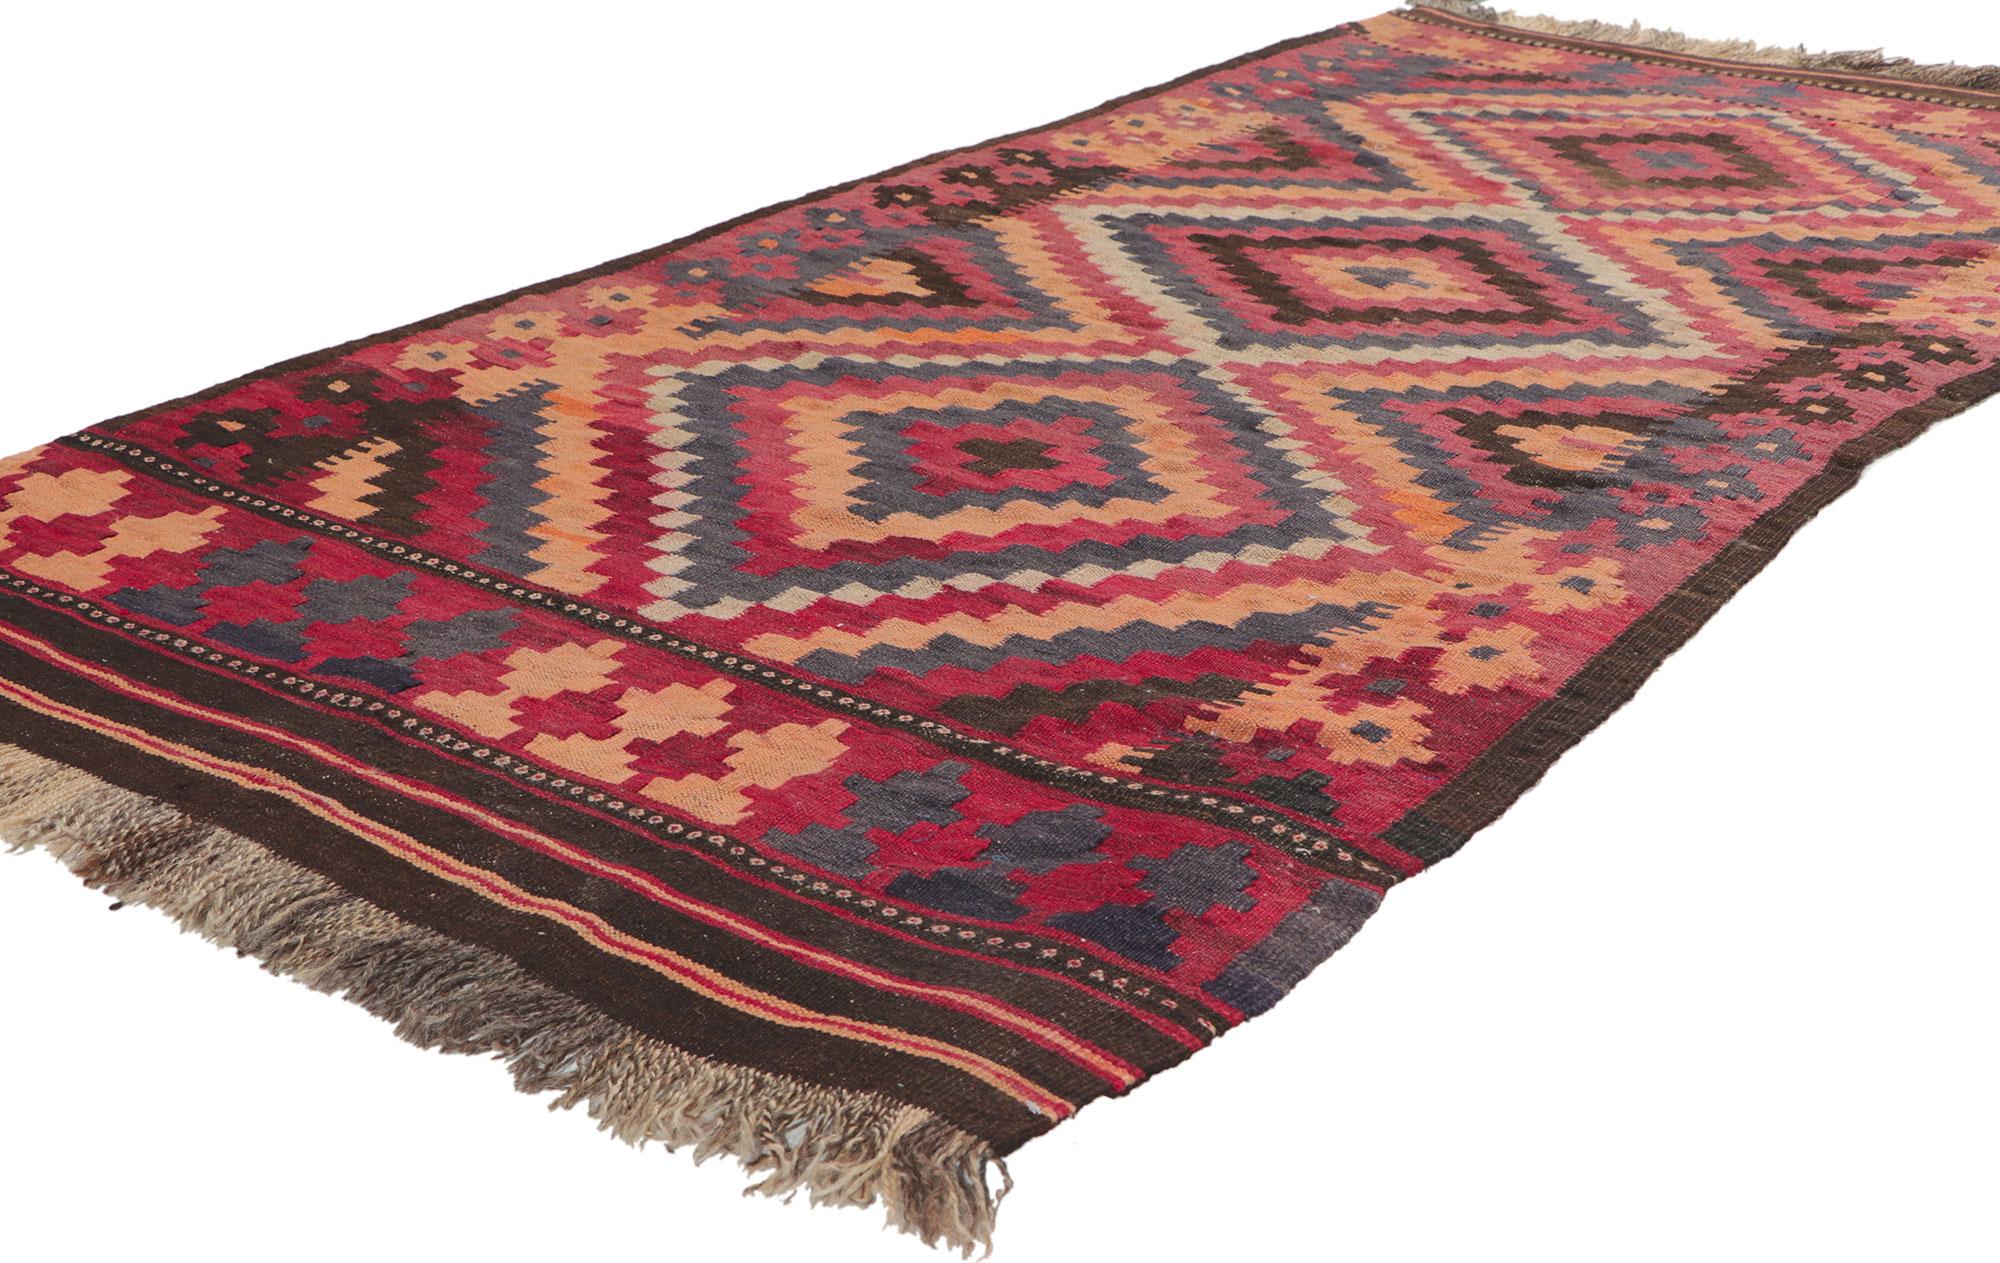 77761 Vintage Afghani Kilim Teppich mit Stammes-Stil, 03'02 x 06'04. Dieser handgewebte afghanische Maimana-Kilimteppich aus Wolle mit winzigen Details und einem ausdrucksstarken Design, kombiniert mit lebendigen Farben und Stammesstil, ist eine